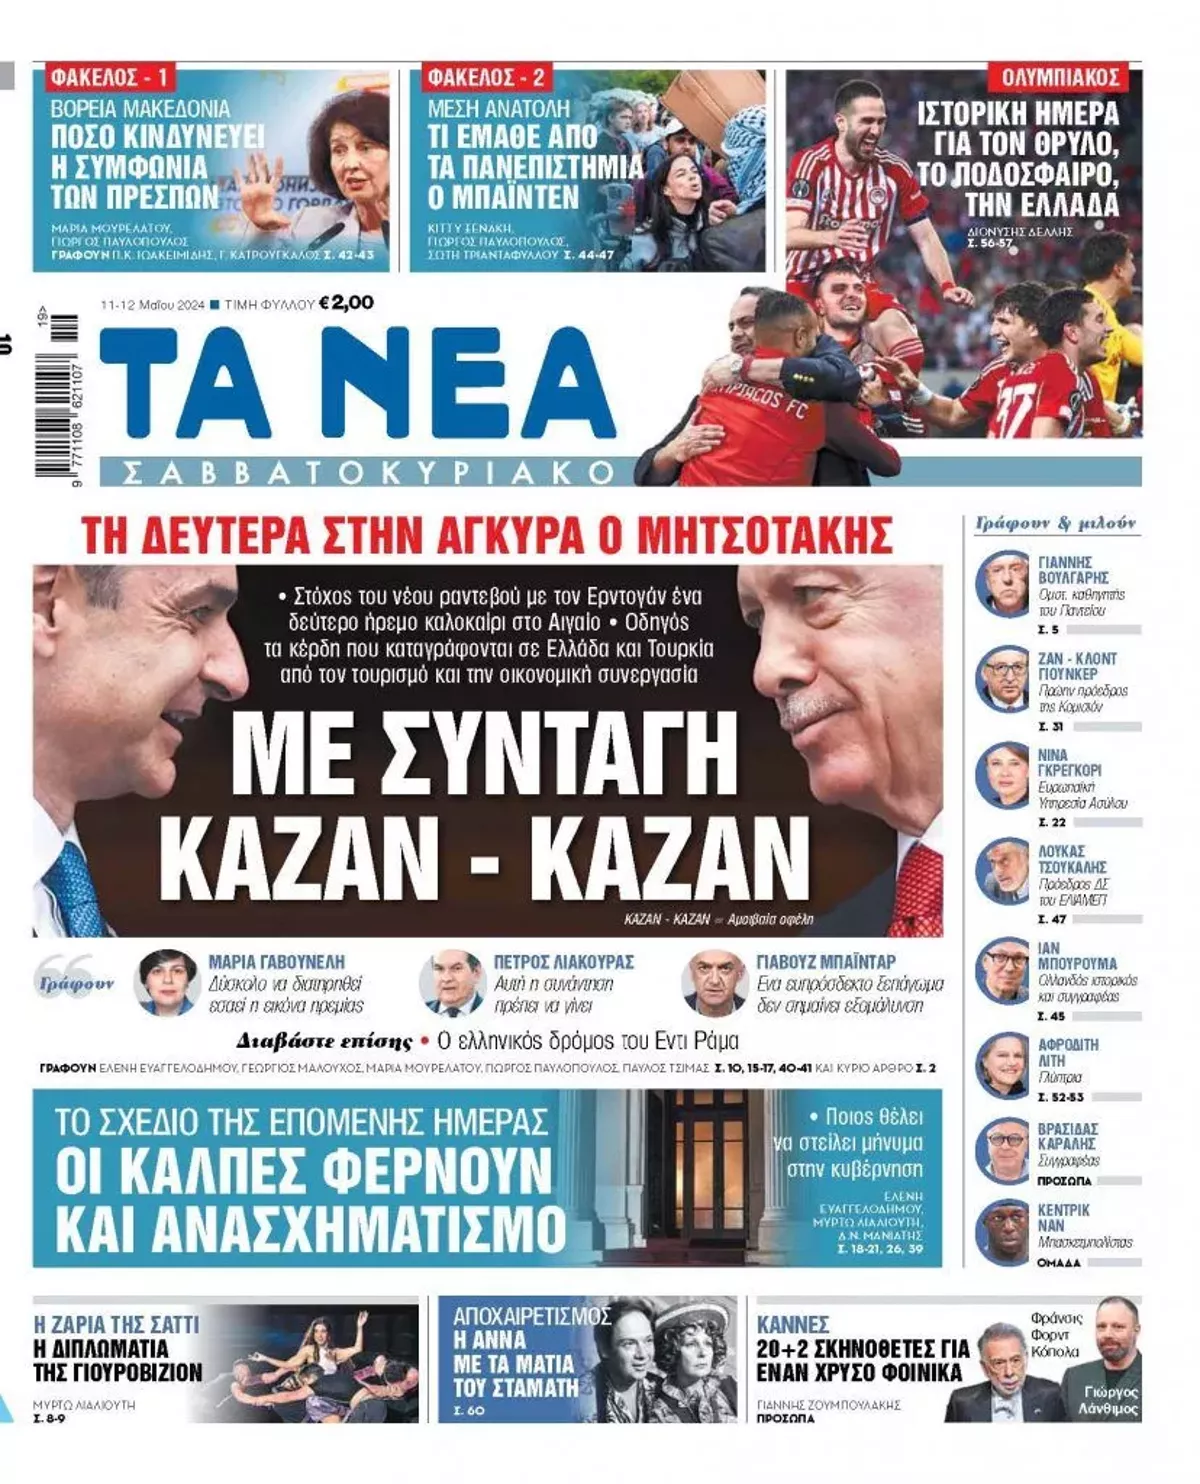 Ο τουρκικός τίτλος των ελληνικών ΜΜΕ εφιστά την προσοχή ενόψει της συνόδου Ερντογάν-Μητσοτάκη